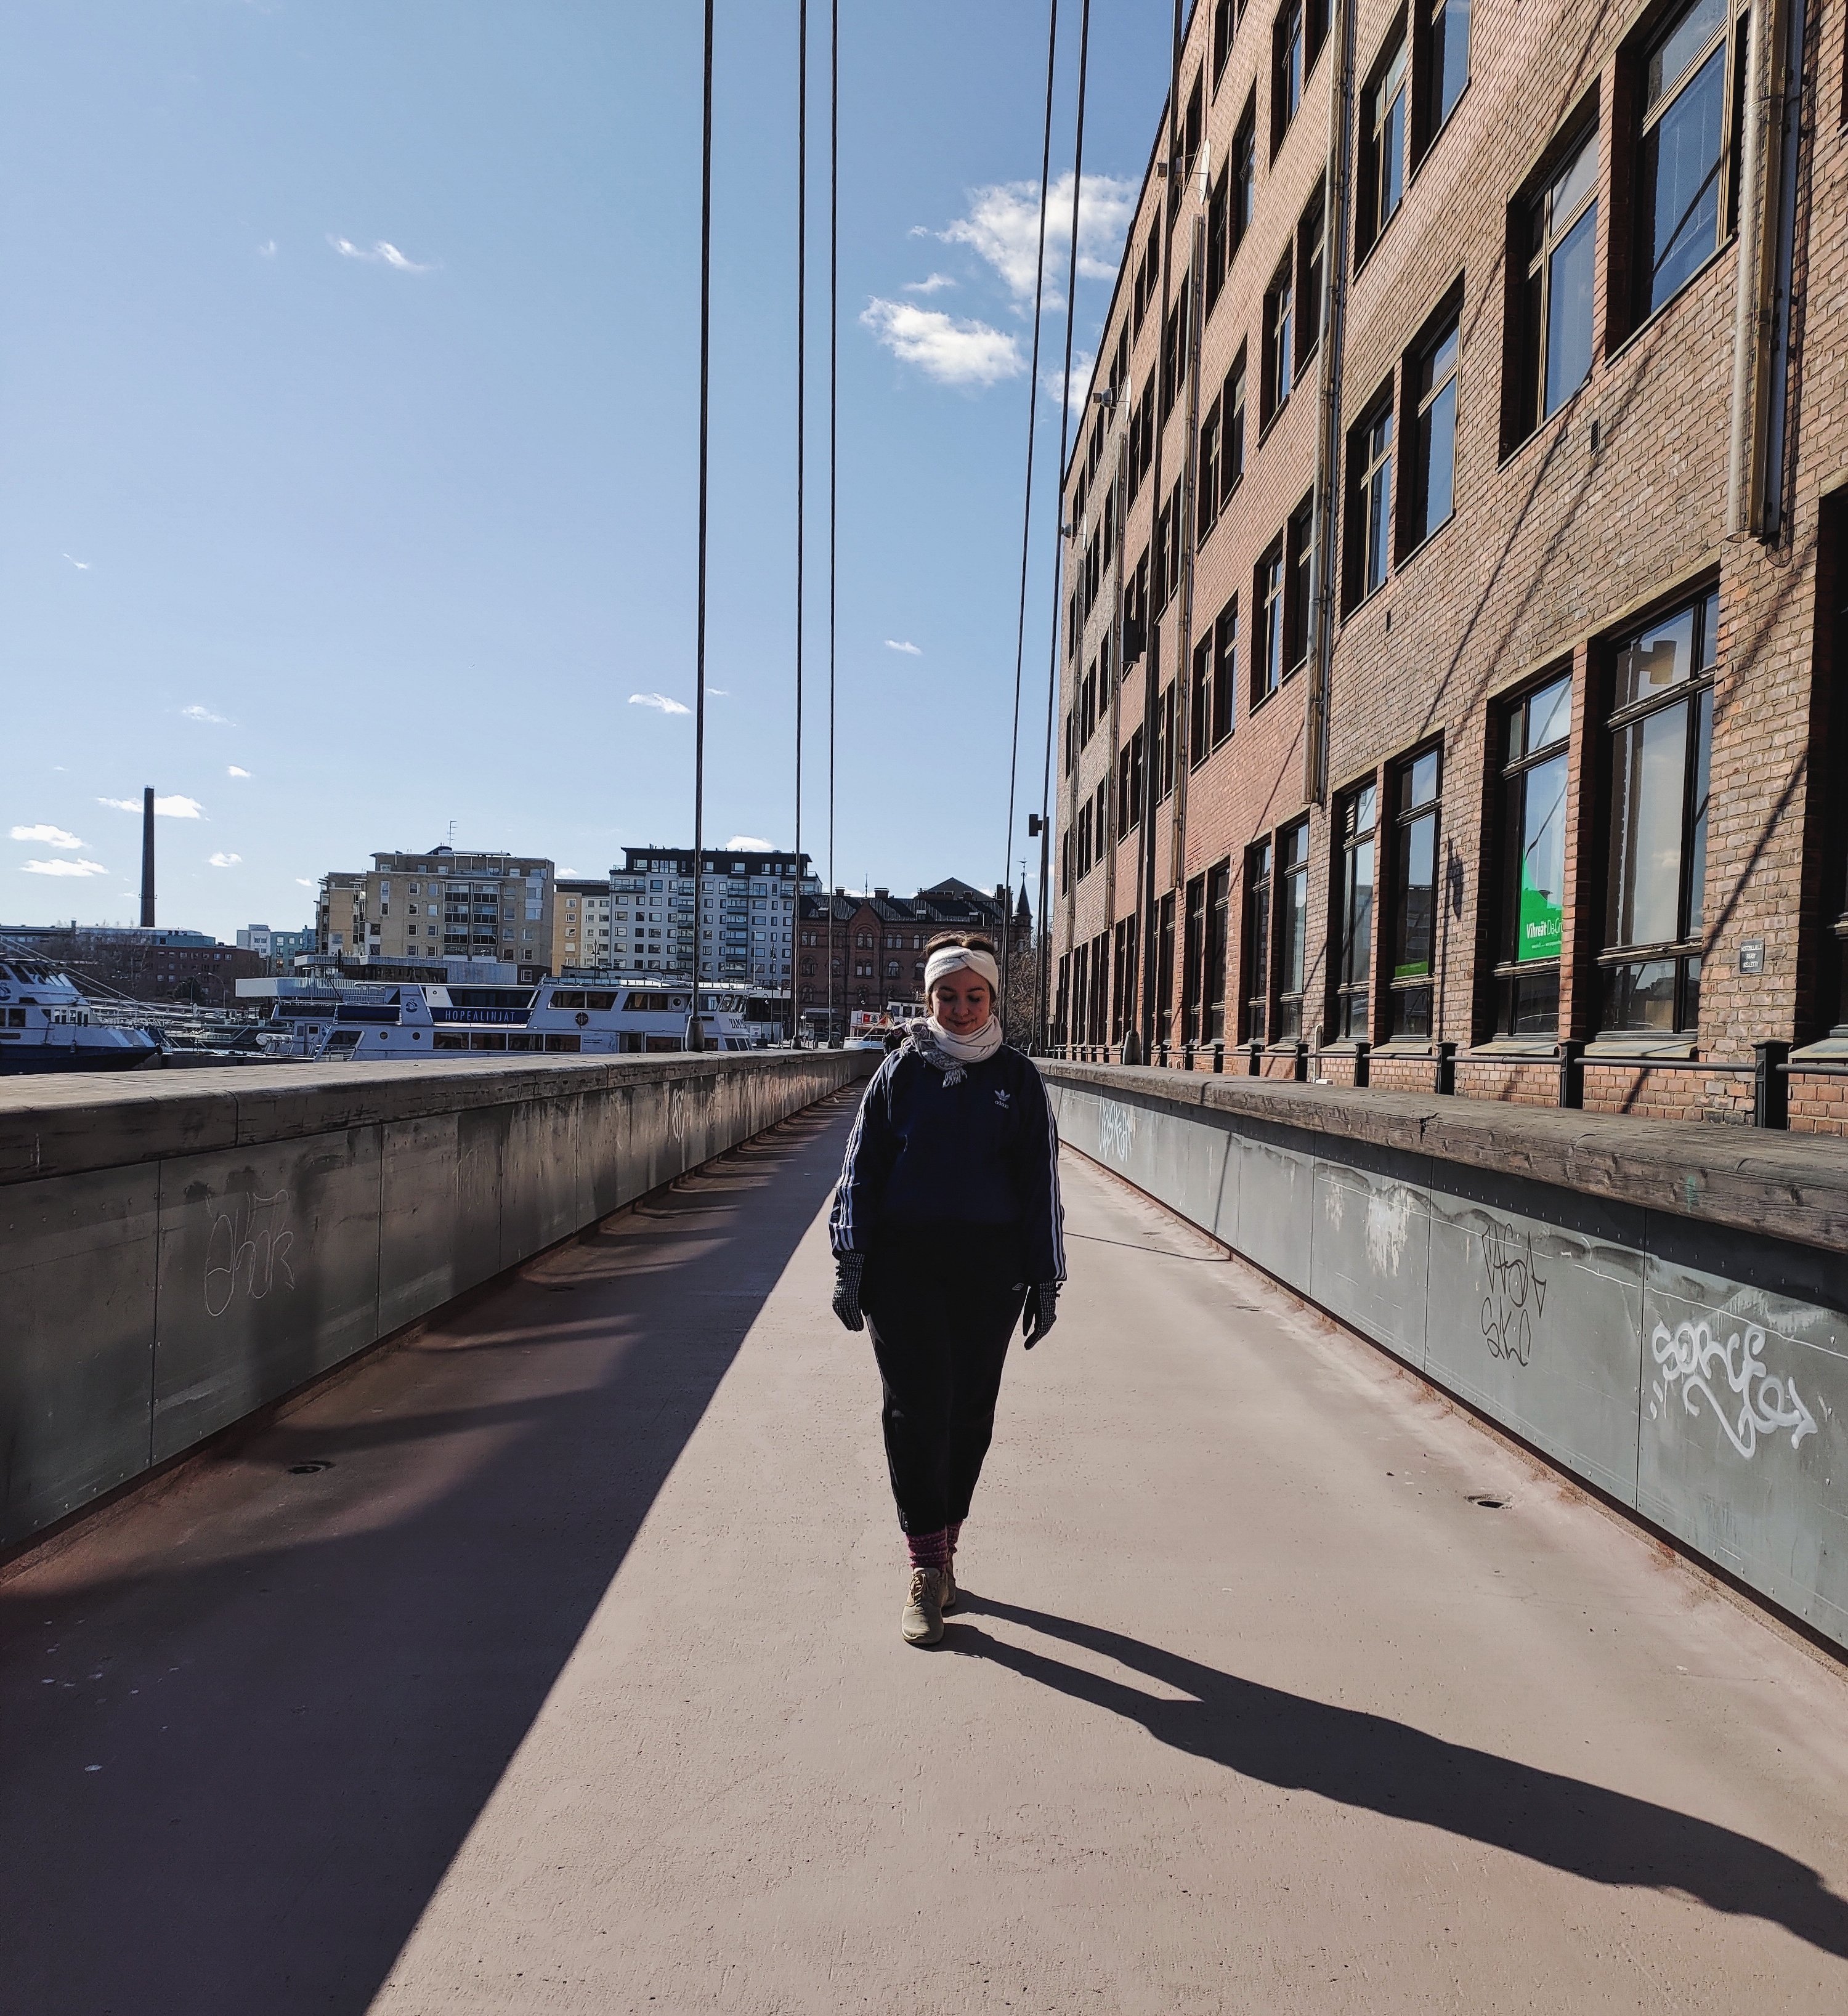 Rosa kävelemässä Tampereen keskustassa.